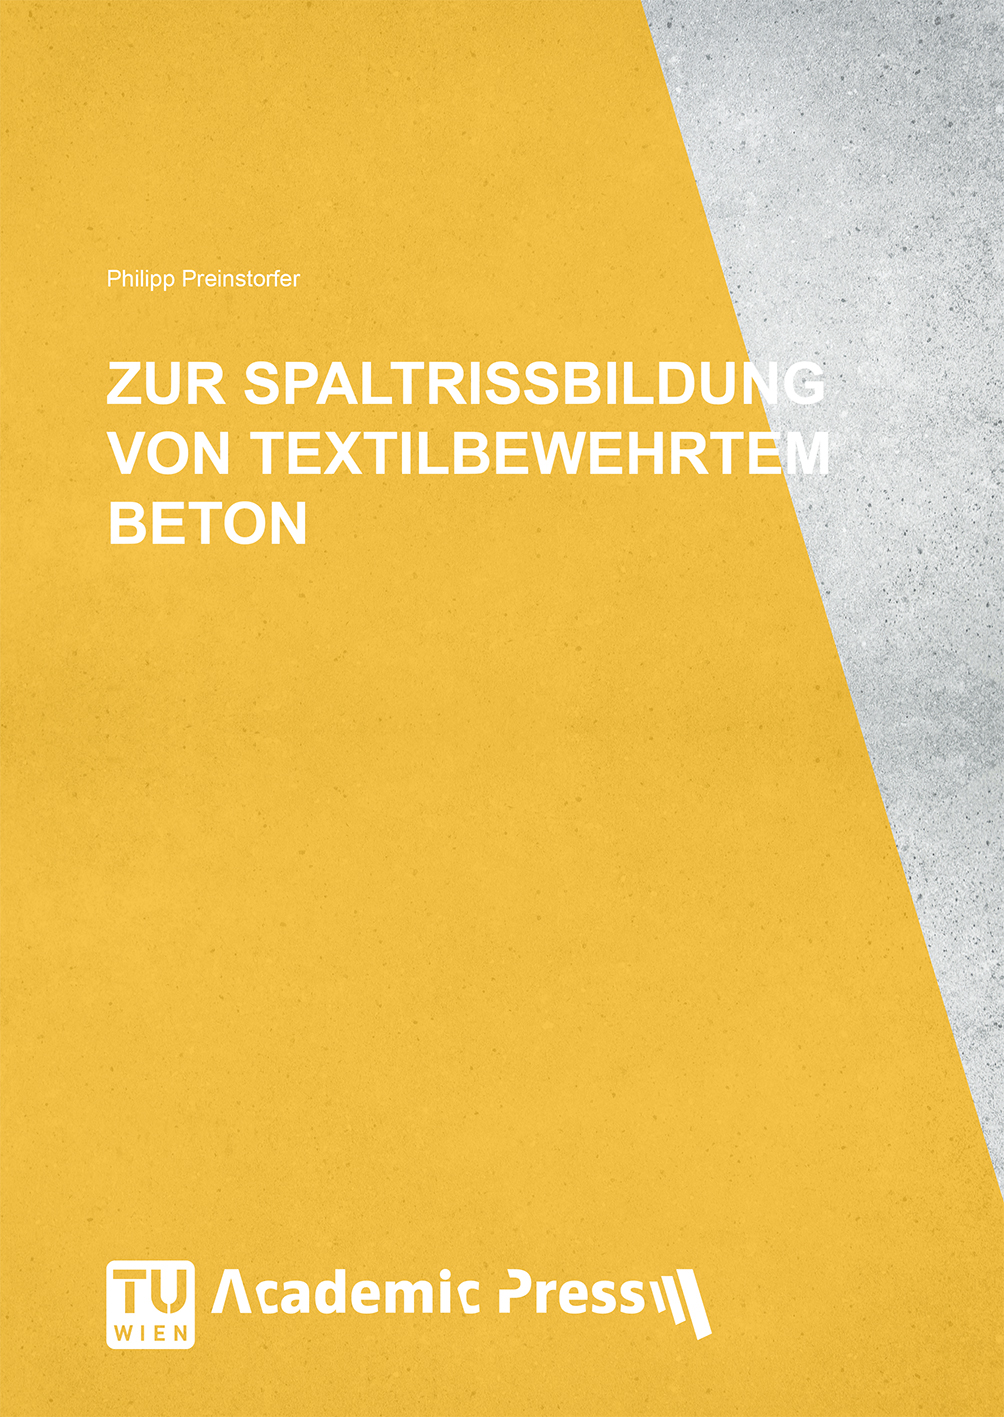 Cover des Buches "Zur Spaltrissbildung von textilbewehrtem Beton"